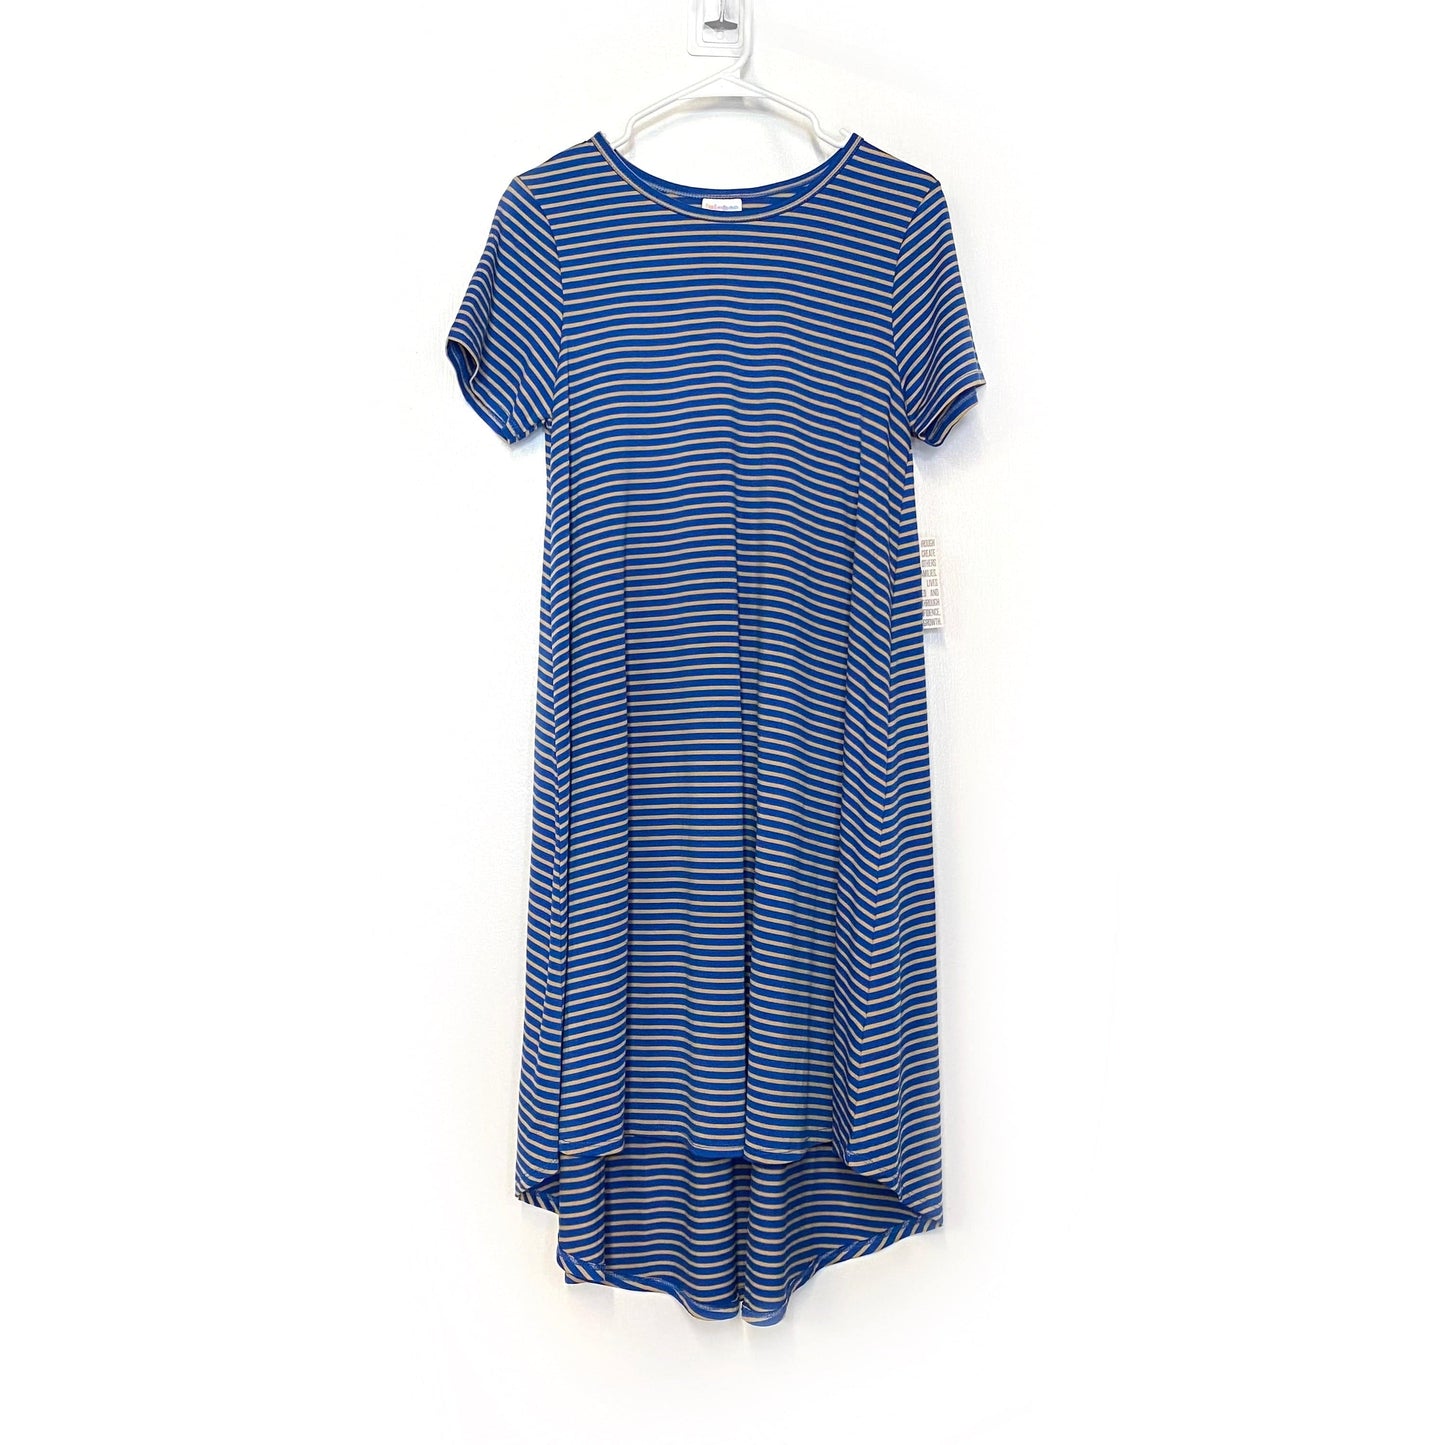 LuLaRoe Womens S Beige/Blue Striped 'Carly' S/s Swing Dress NWT